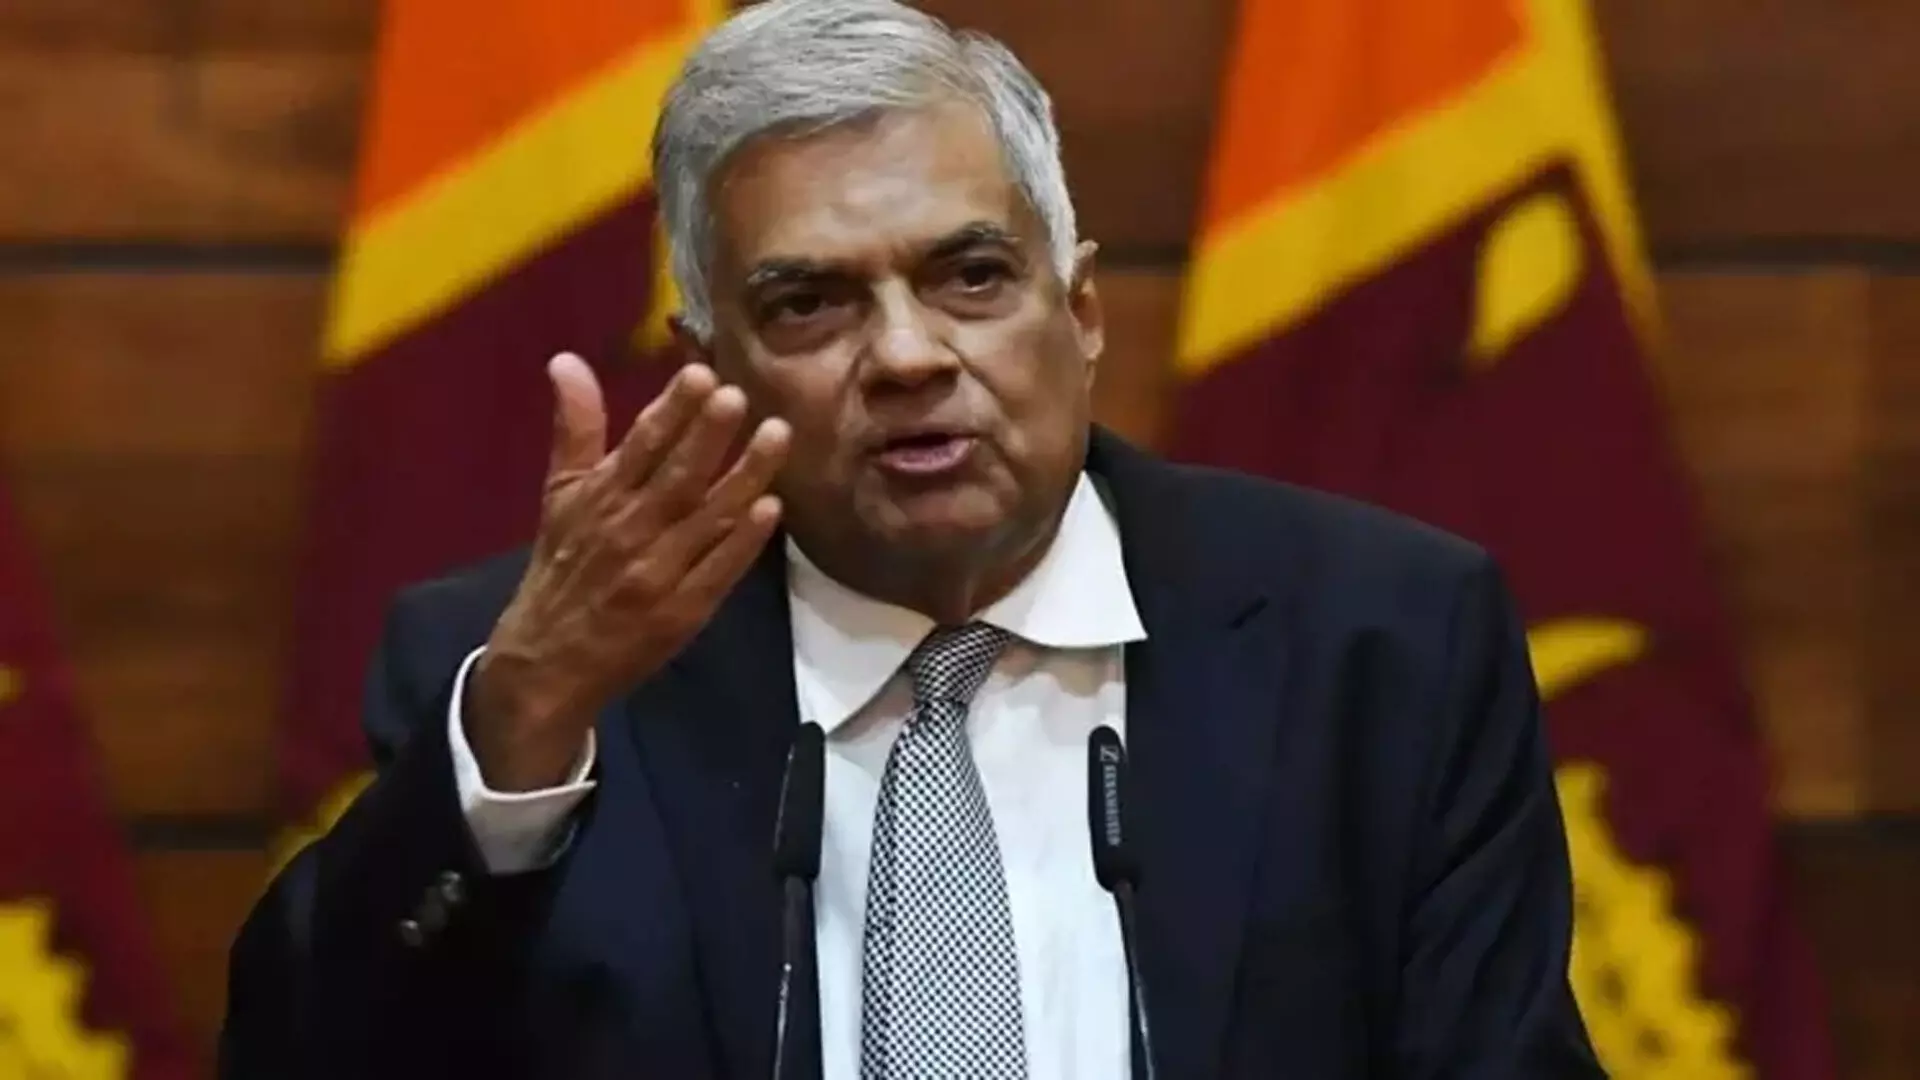 Sri Lanka राष्ट्रपति पद के उम्मीदवारों की सुरक्षा बढ़ाएगा